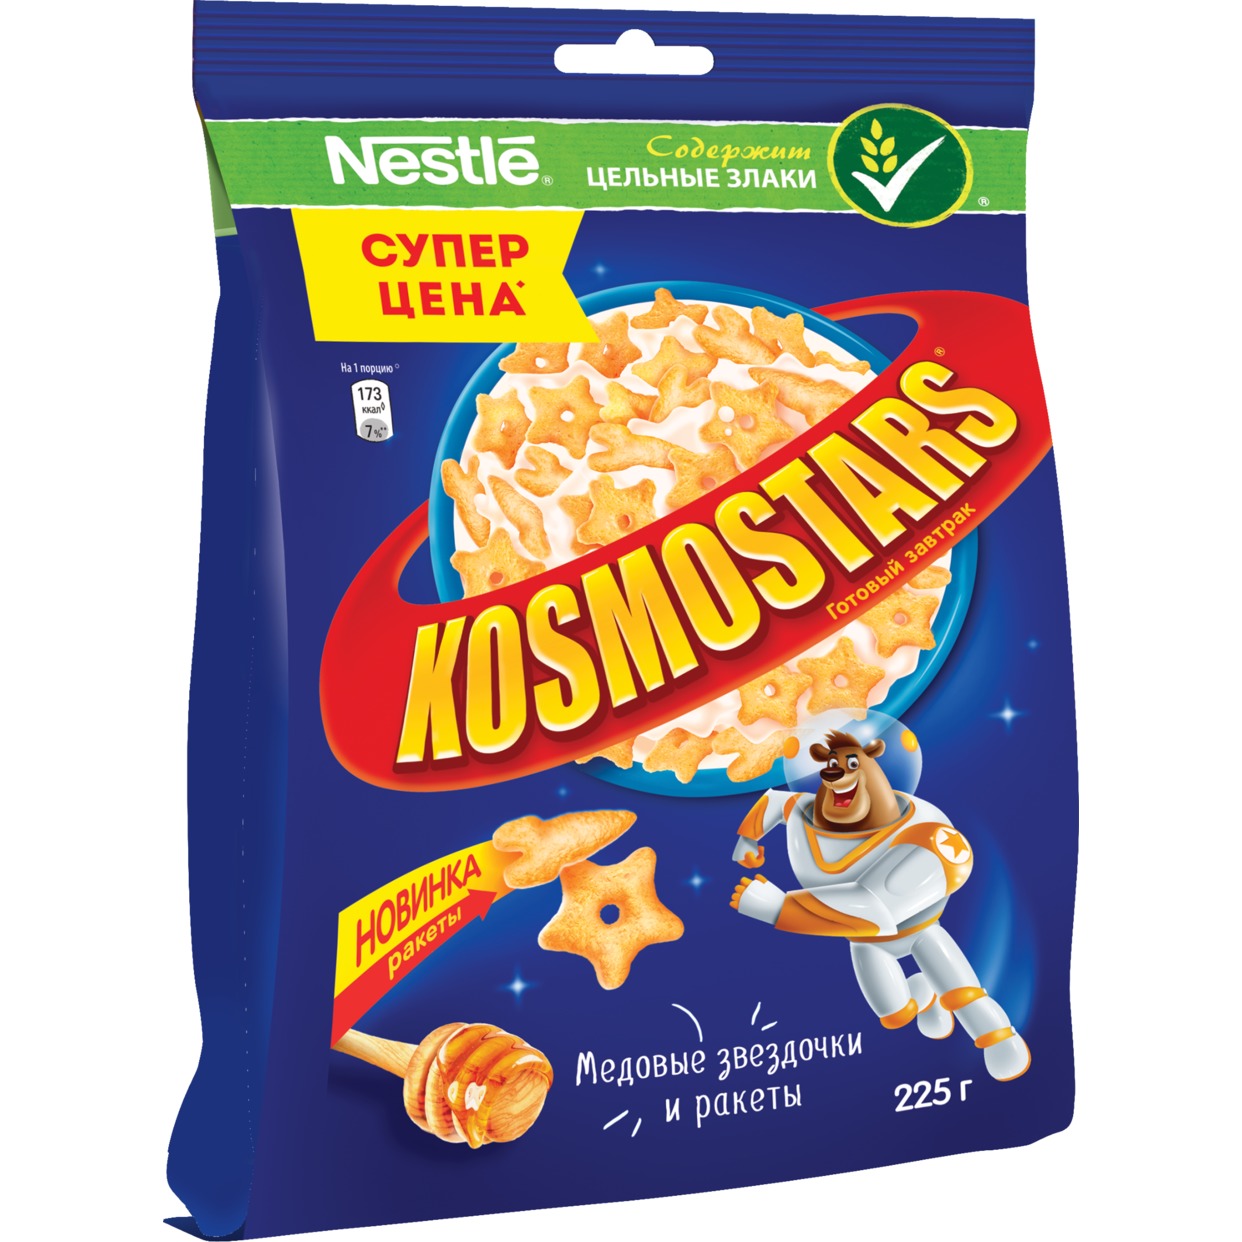 Завтрак медовый Kosmostars, 225 г